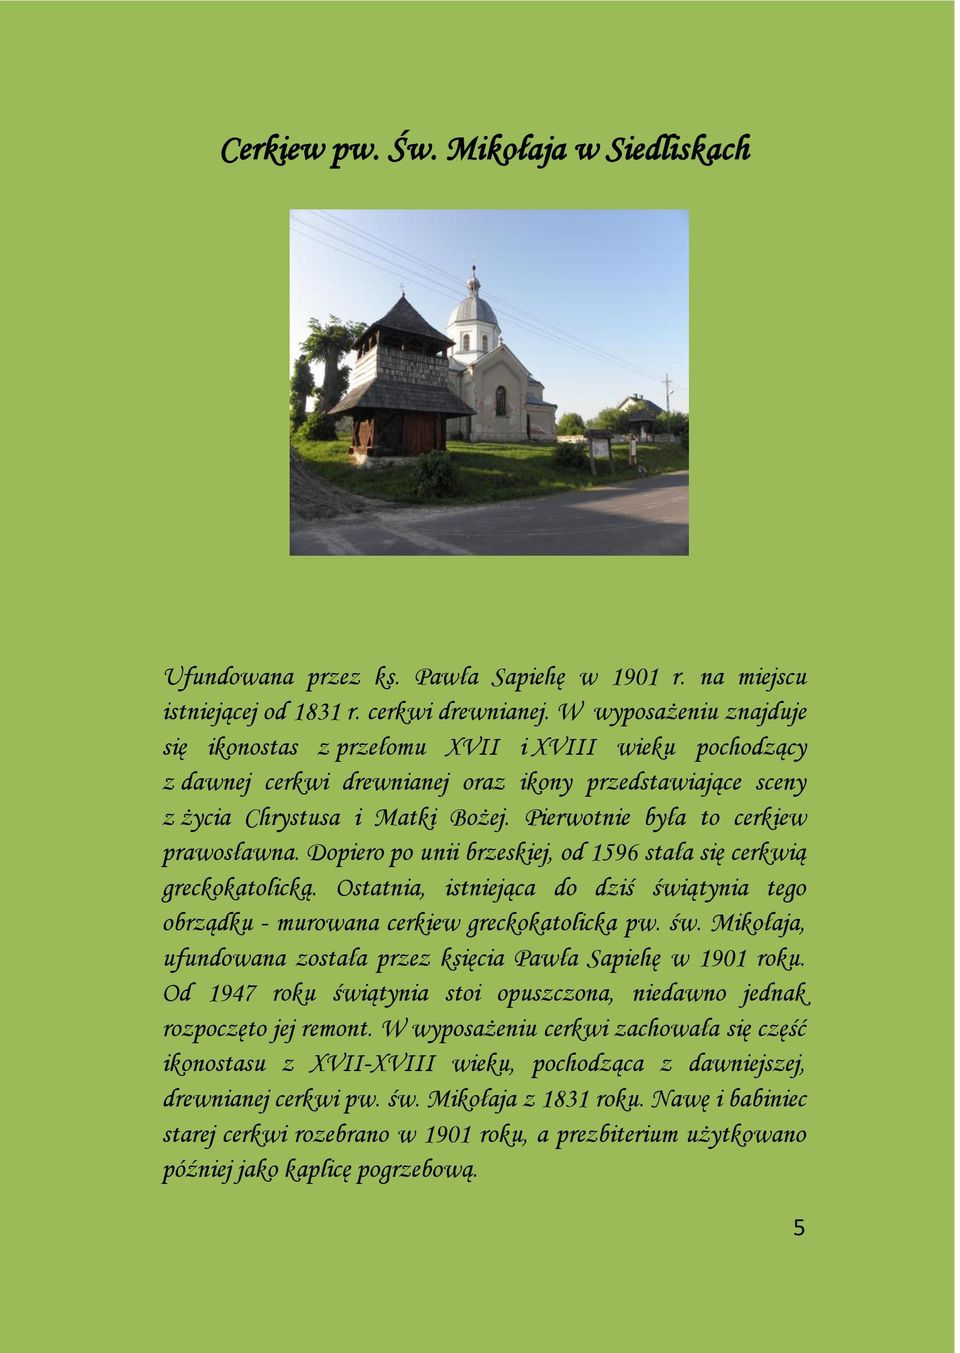 Pierwotnie była to cerkiew prawosławna. Dopiero po unii brzeskiej, od 1596 stała się cerkwią greckokatolicką.